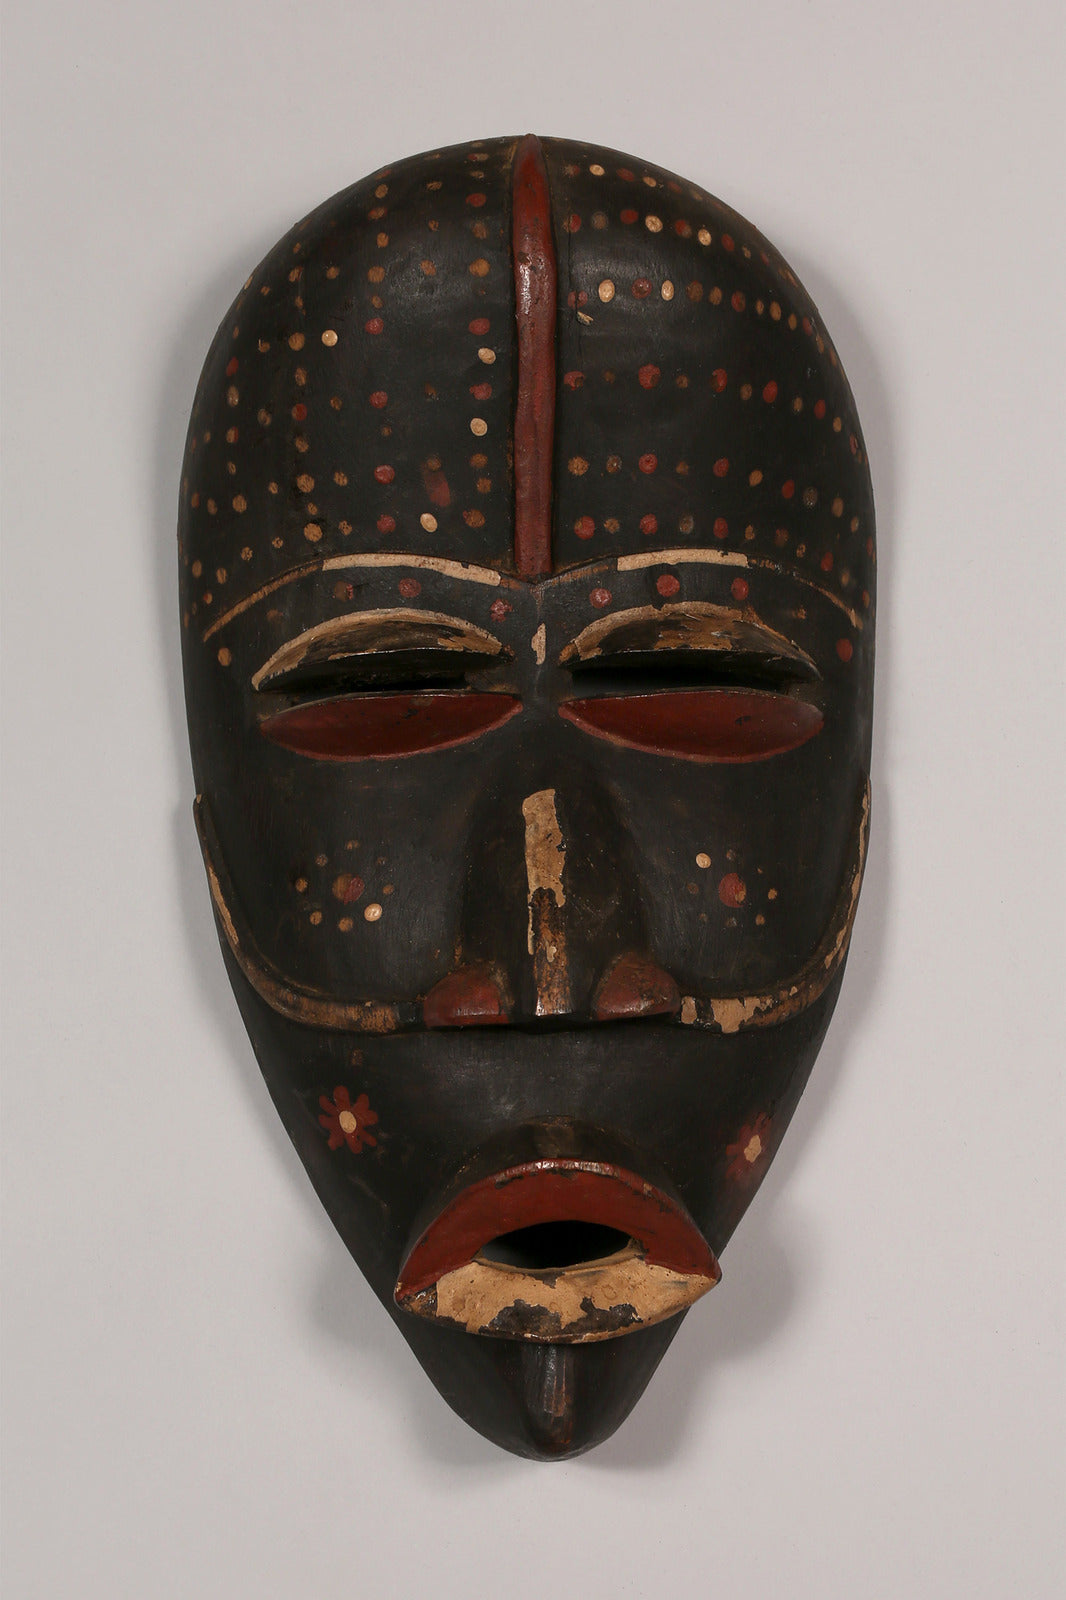 African Artwork  Wooden Masks  Vintage  Home Decor  Handcrafted Art - Masks  Dan Masks  African Masks  African Art